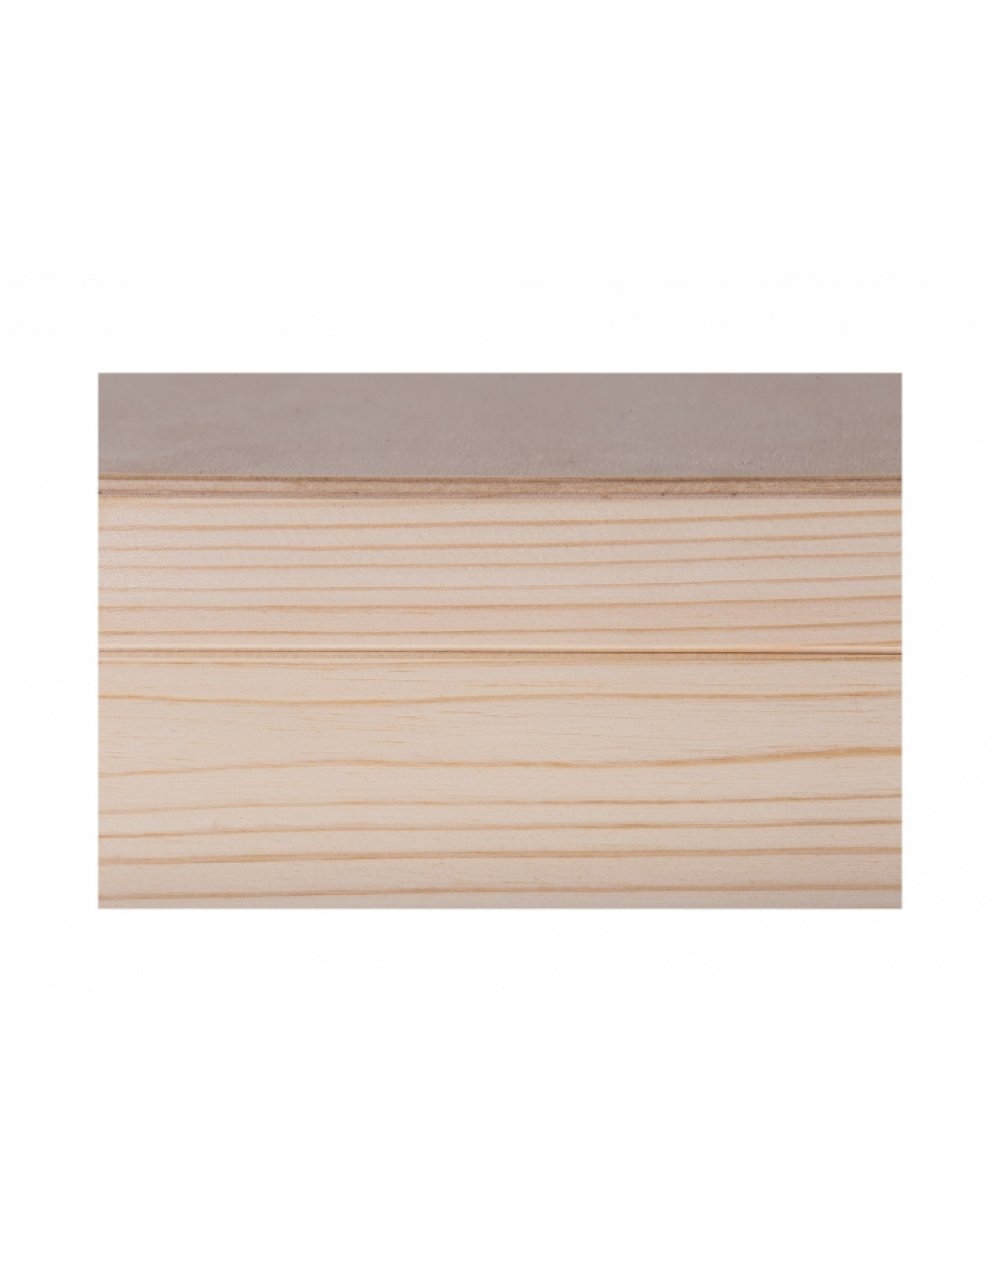 Víceúčelová přírodní dřevěná krabička 47x8x6 cm